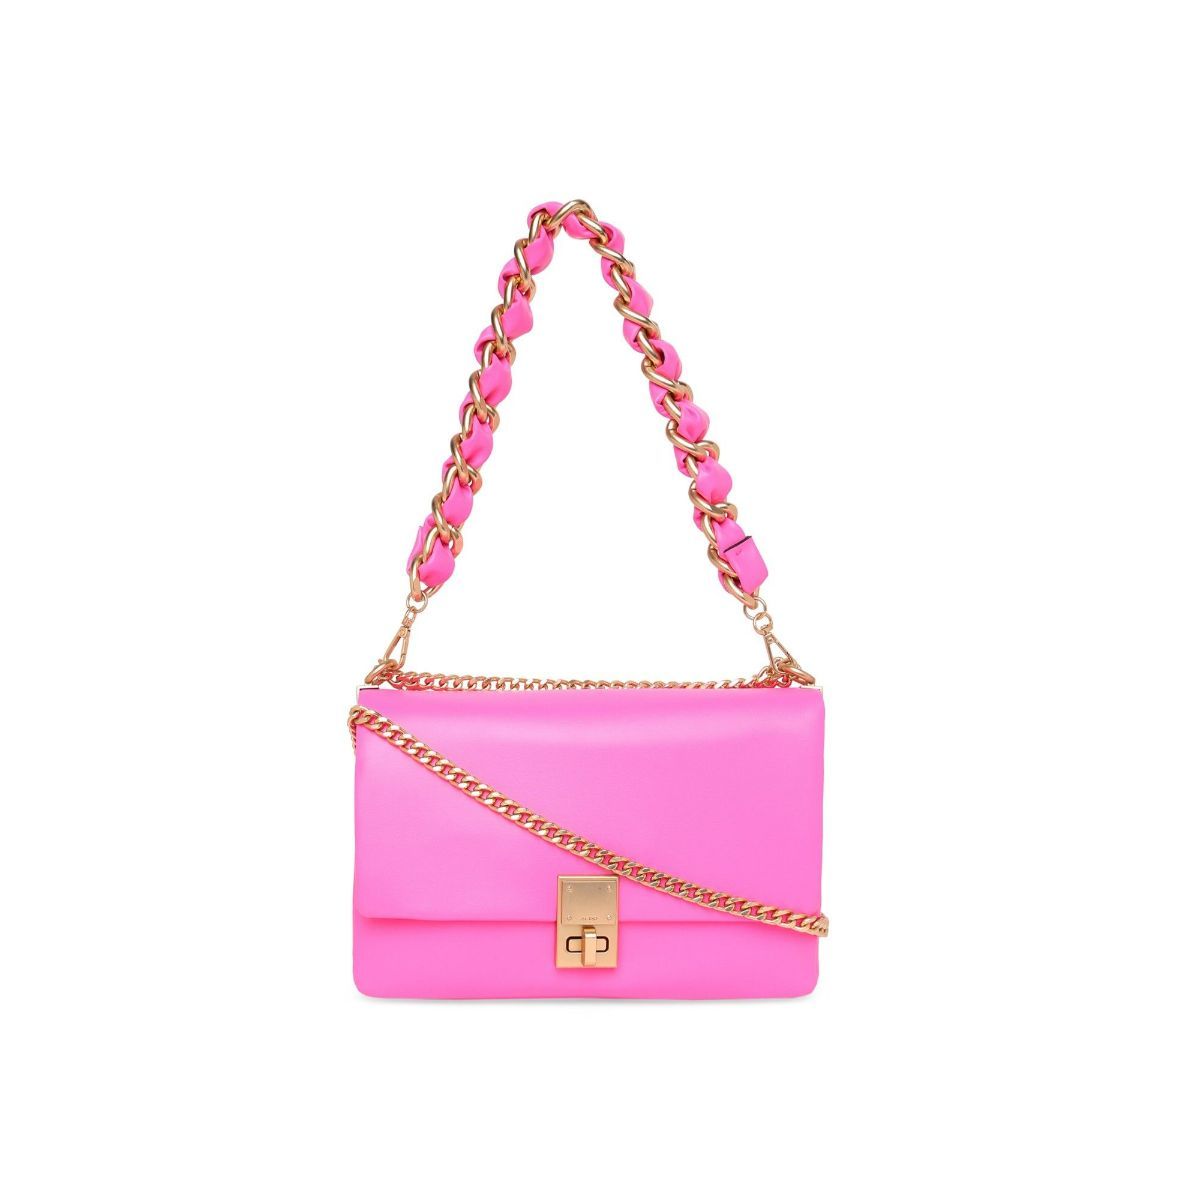 ALDO RED SMALL PURSE | Small purse, Purses, Aldo bags